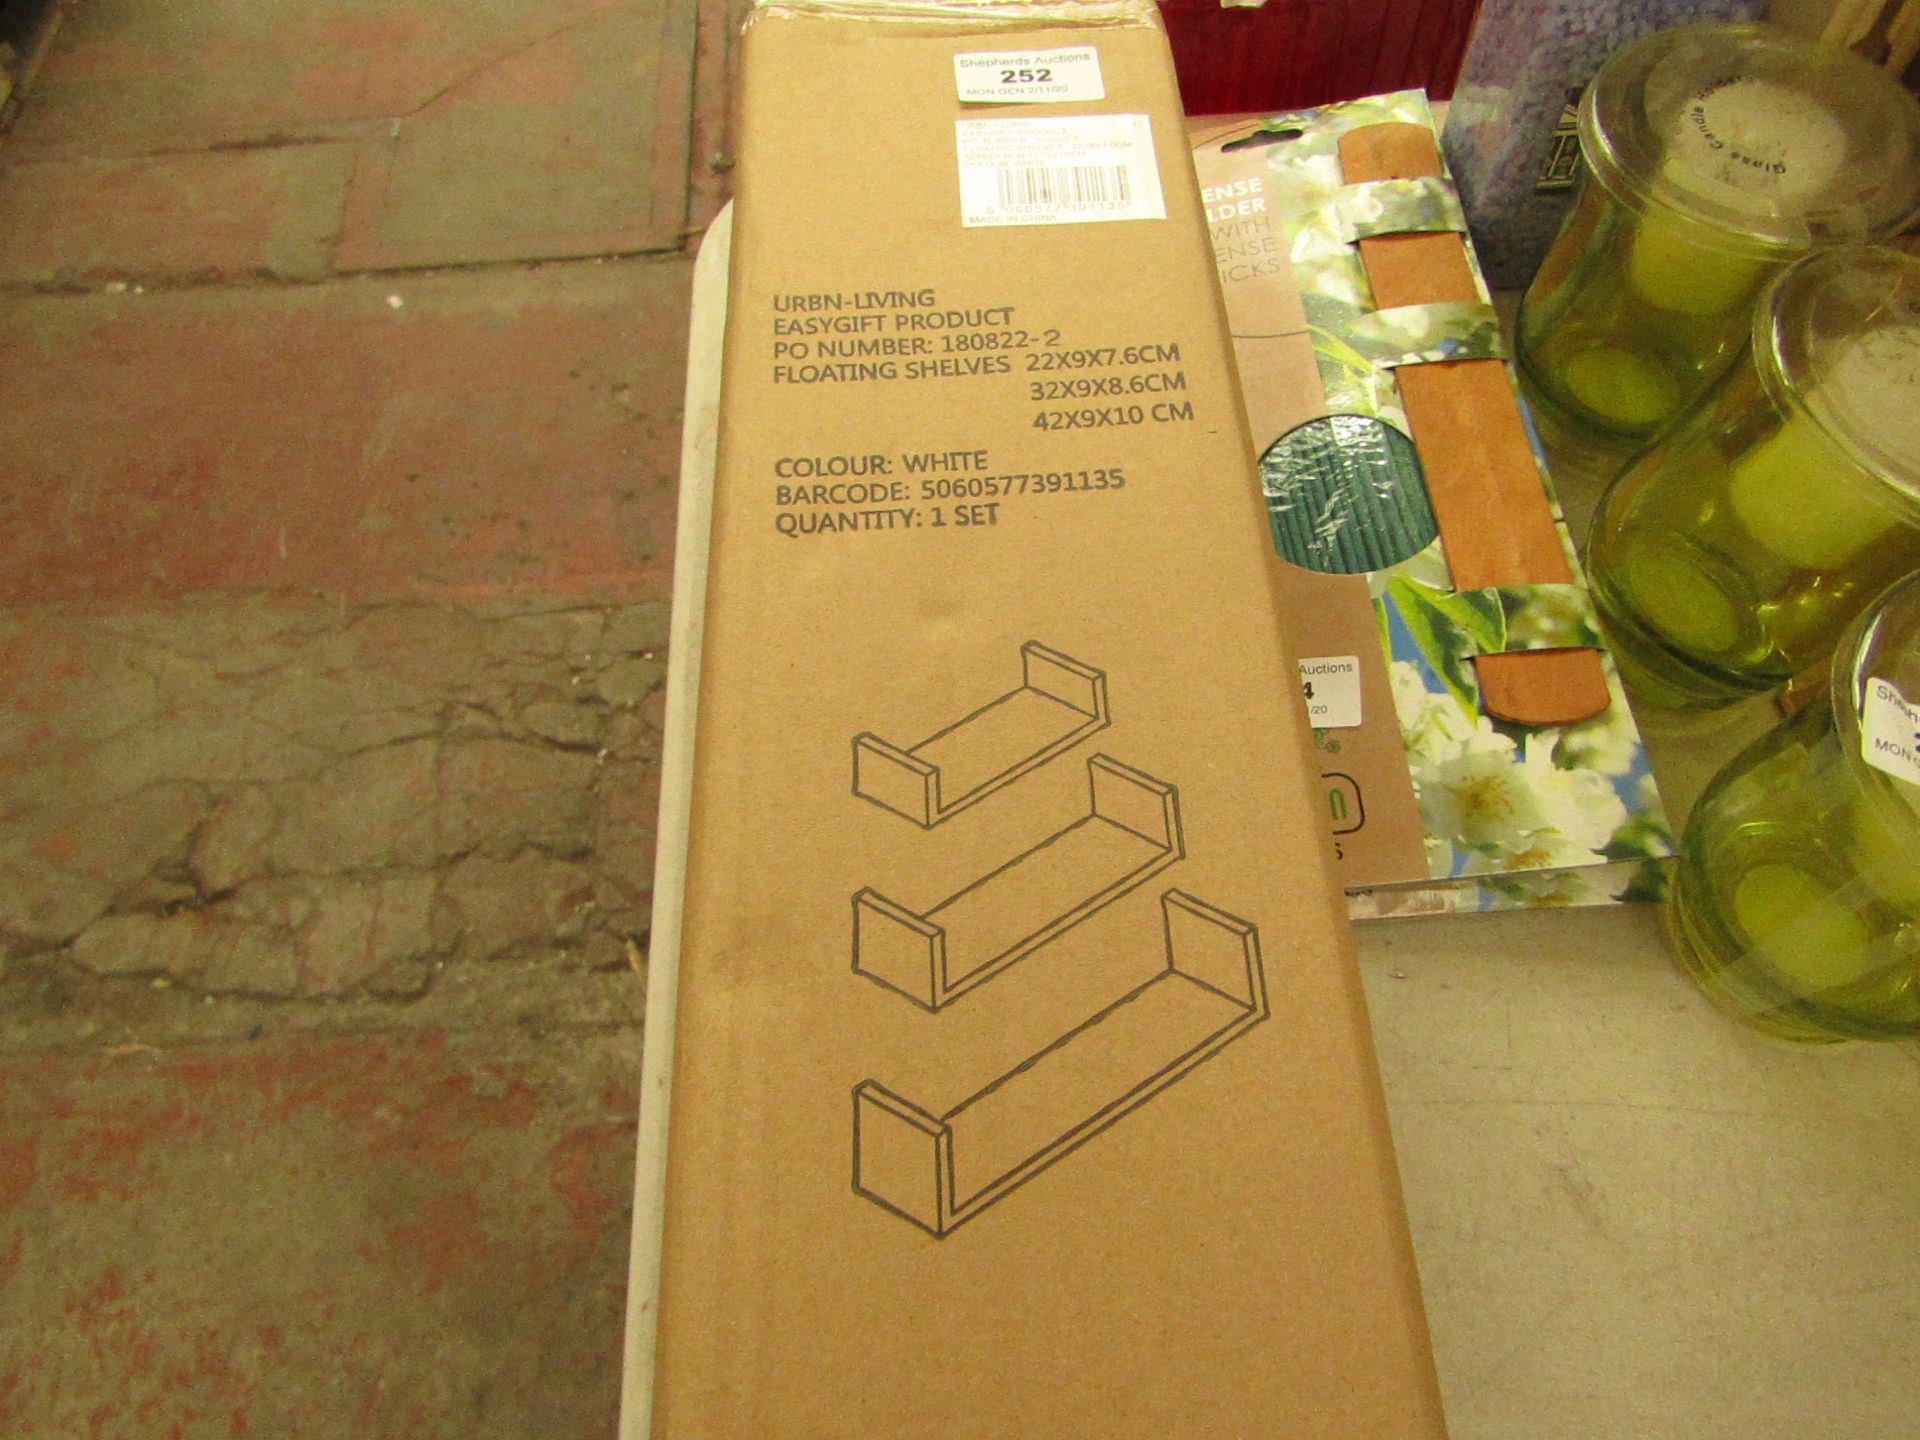 Urban Living - Set of 3 Floating Shelfs - Unused & Boxed.